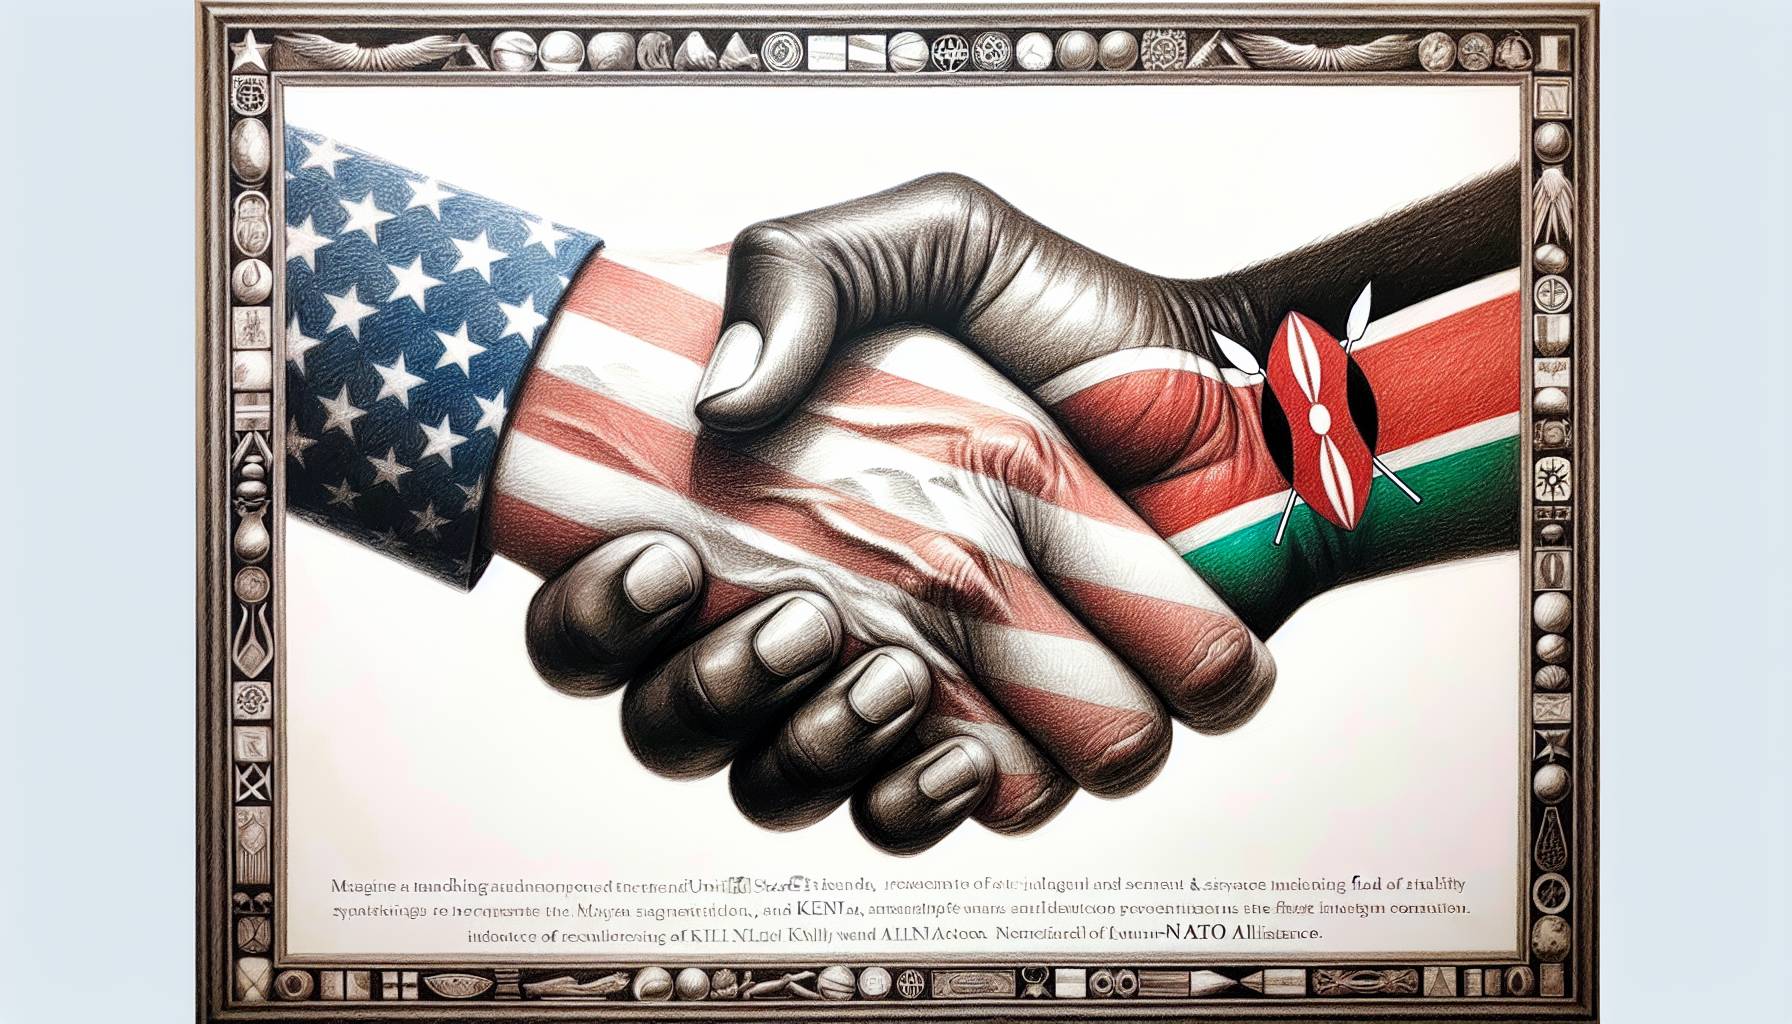 "Kenya Ally"